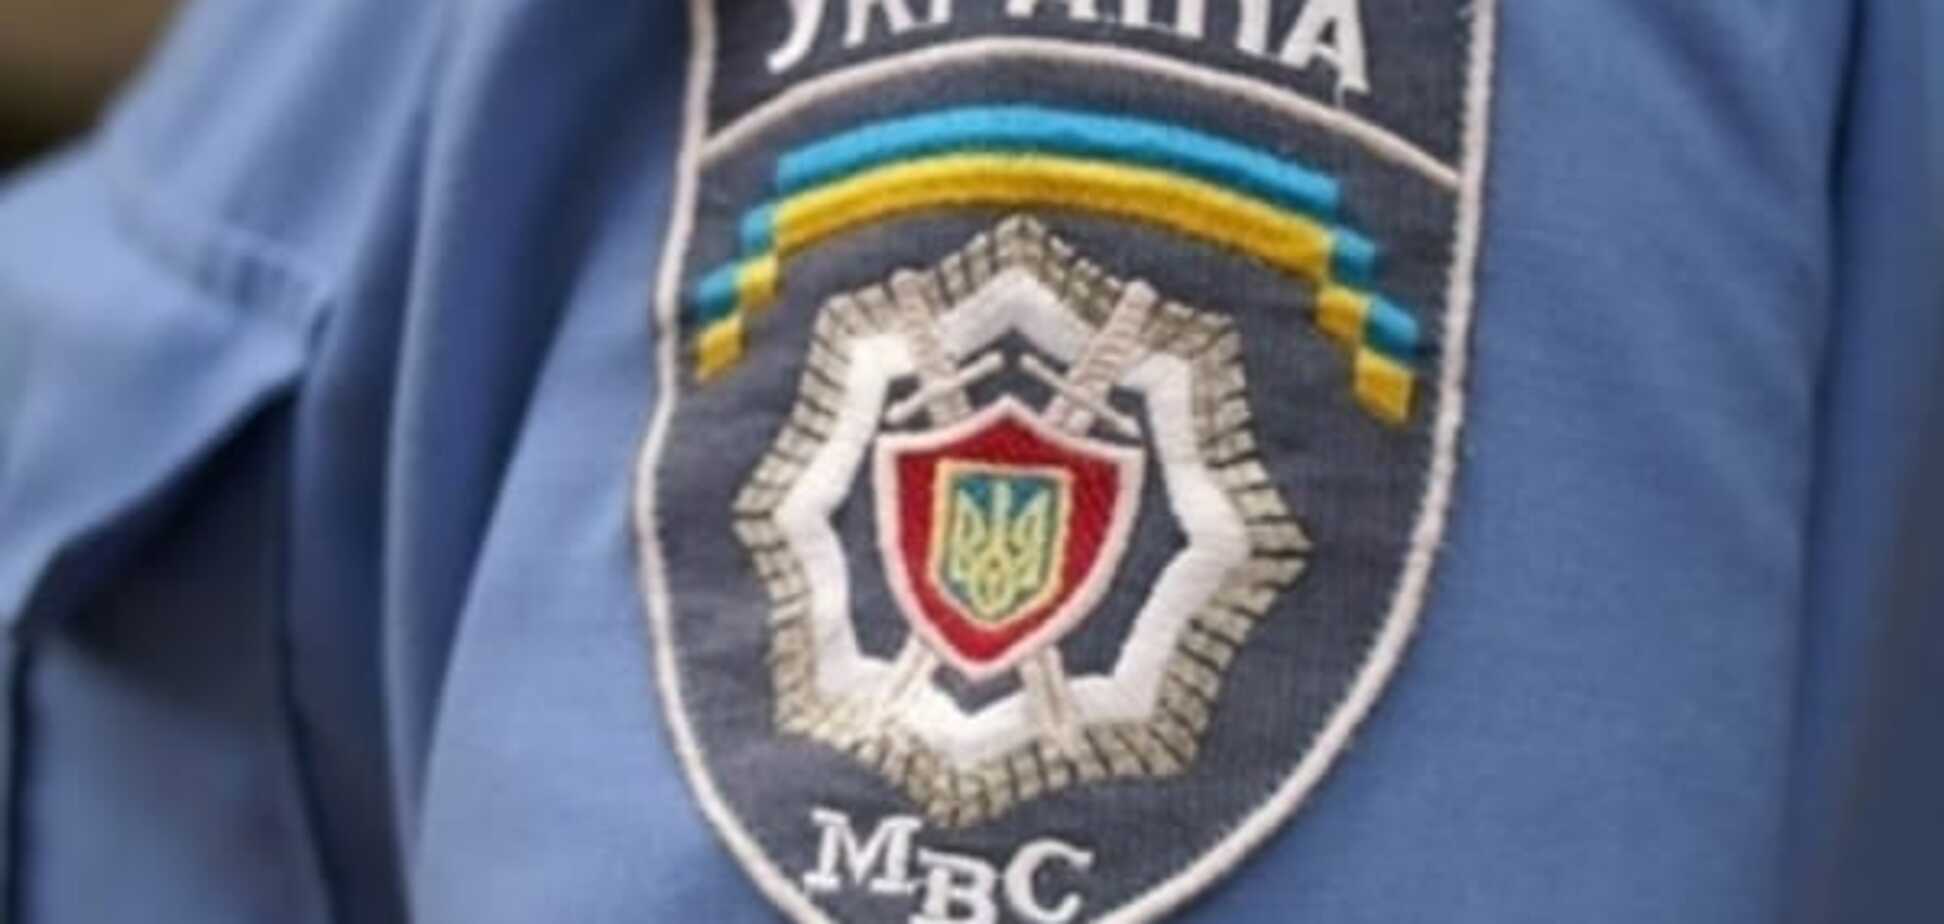 Розстріл авто в Києві: міліція оперативно затримала стрільця, замміністра охороняють